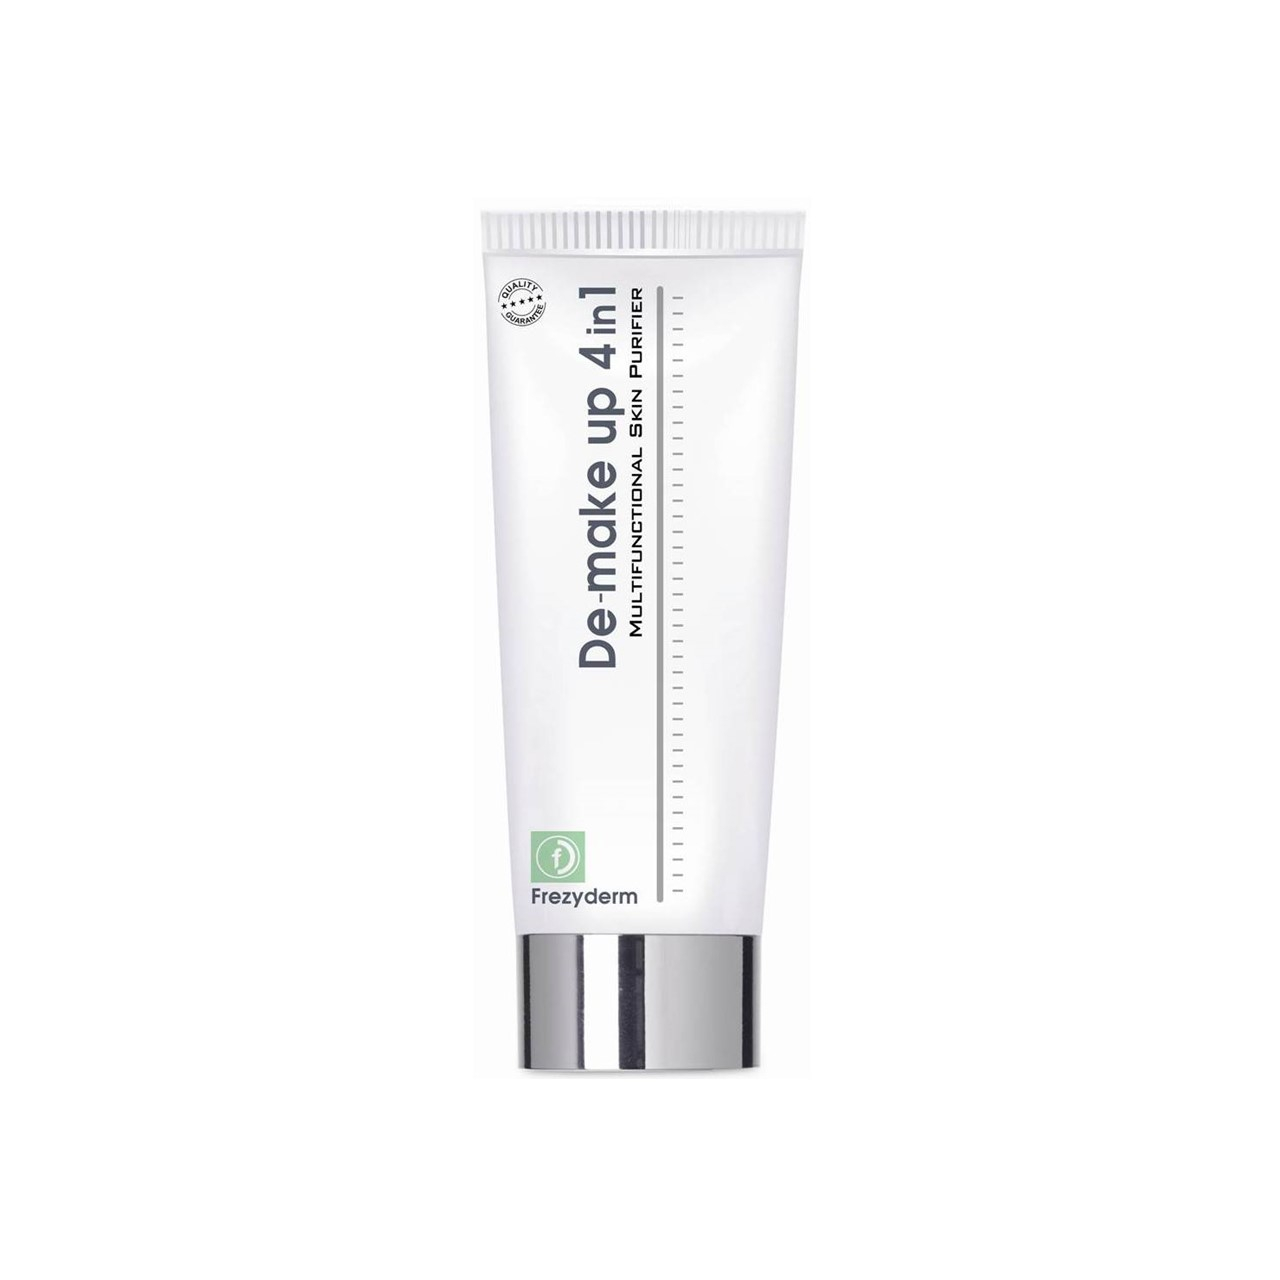 Frezyderm De-Make Up 4 in 1 Multifunctional Skin Purifier 200ml (6.76fl oz)